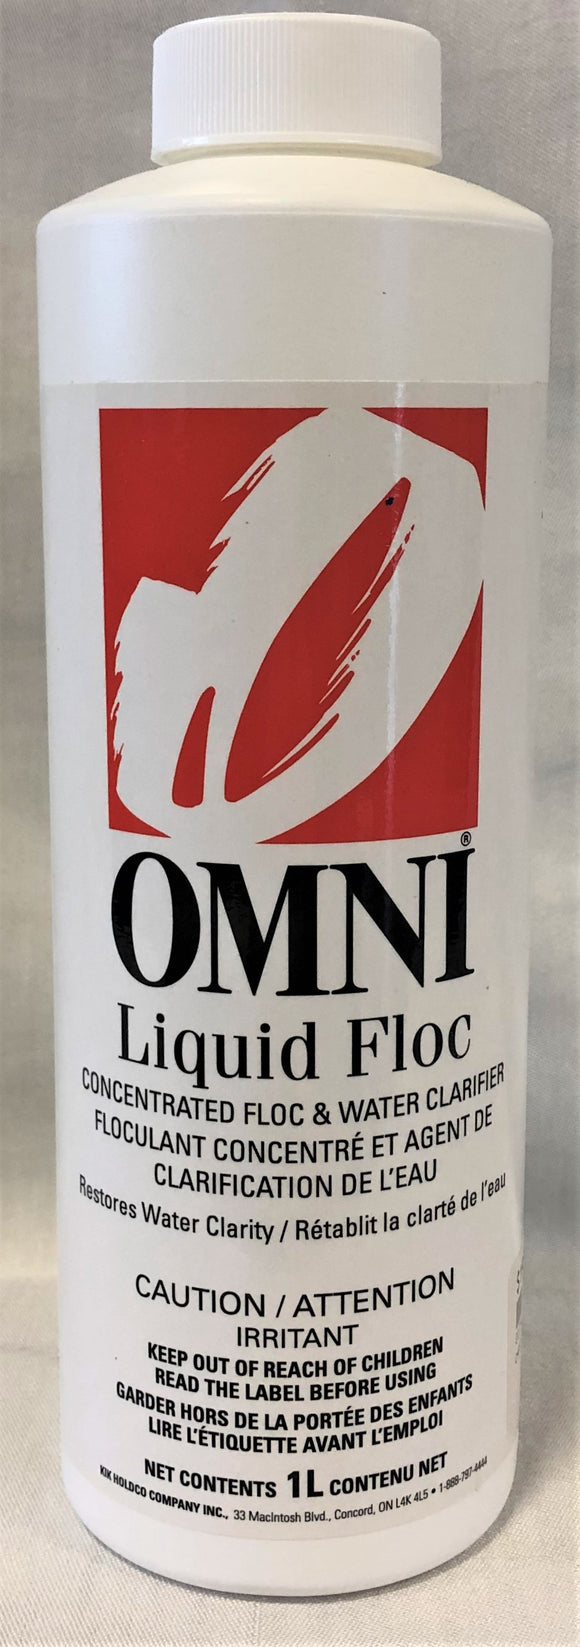 Omni Liquid Floc